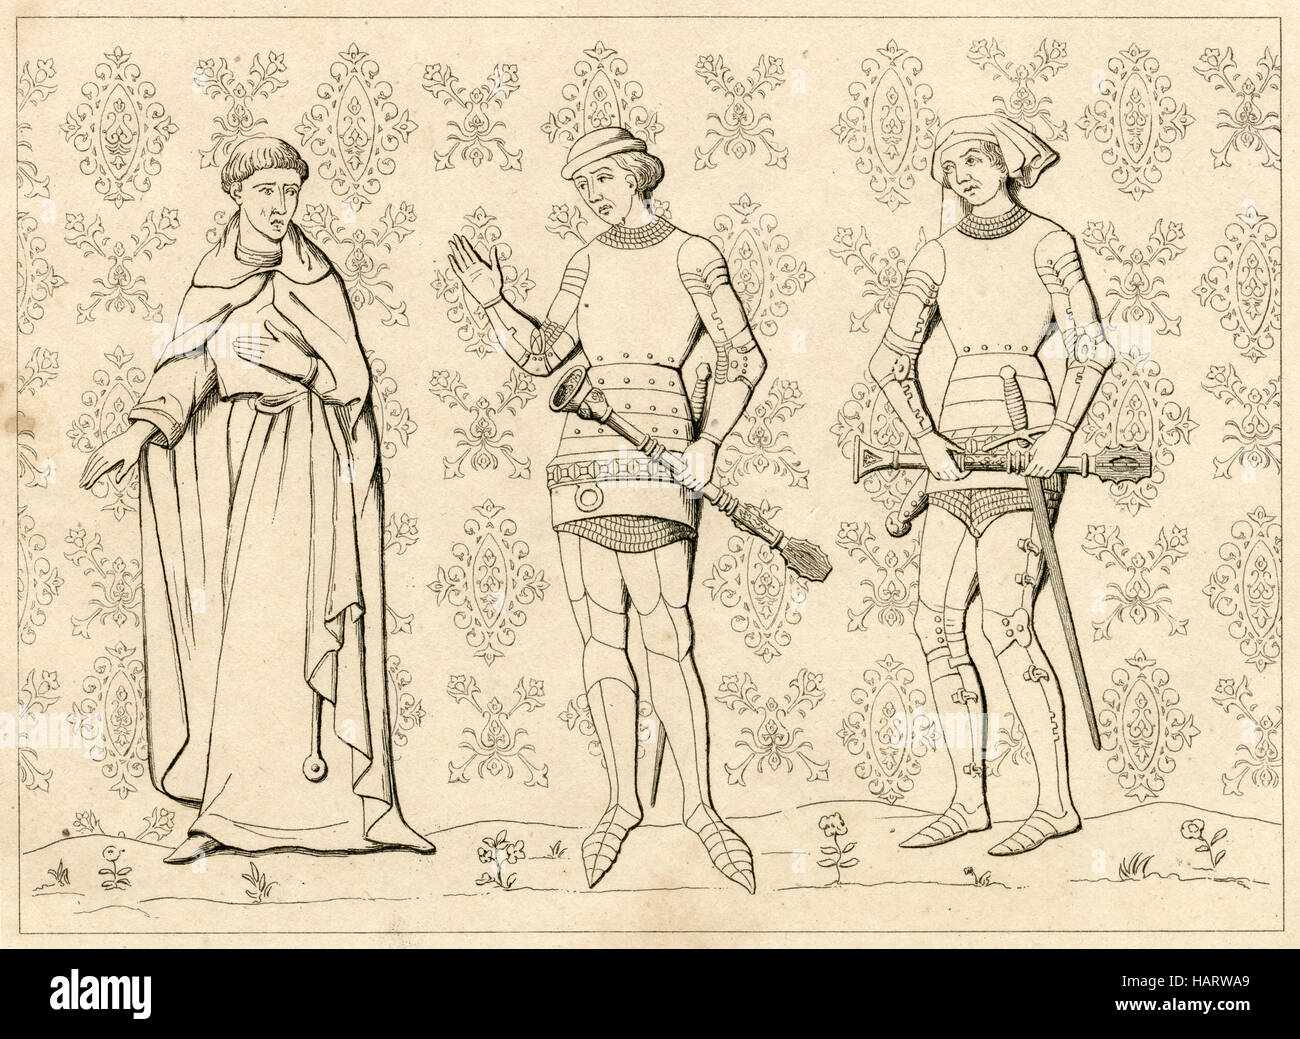 Grabado antiguo, circa 1860, representando los uniformes del siglo XIII de un hombre religioso francés y Sargento de Armas. Grabado por Charles Vernier (1831-1892). Fuente: grabado original. Foto de stock